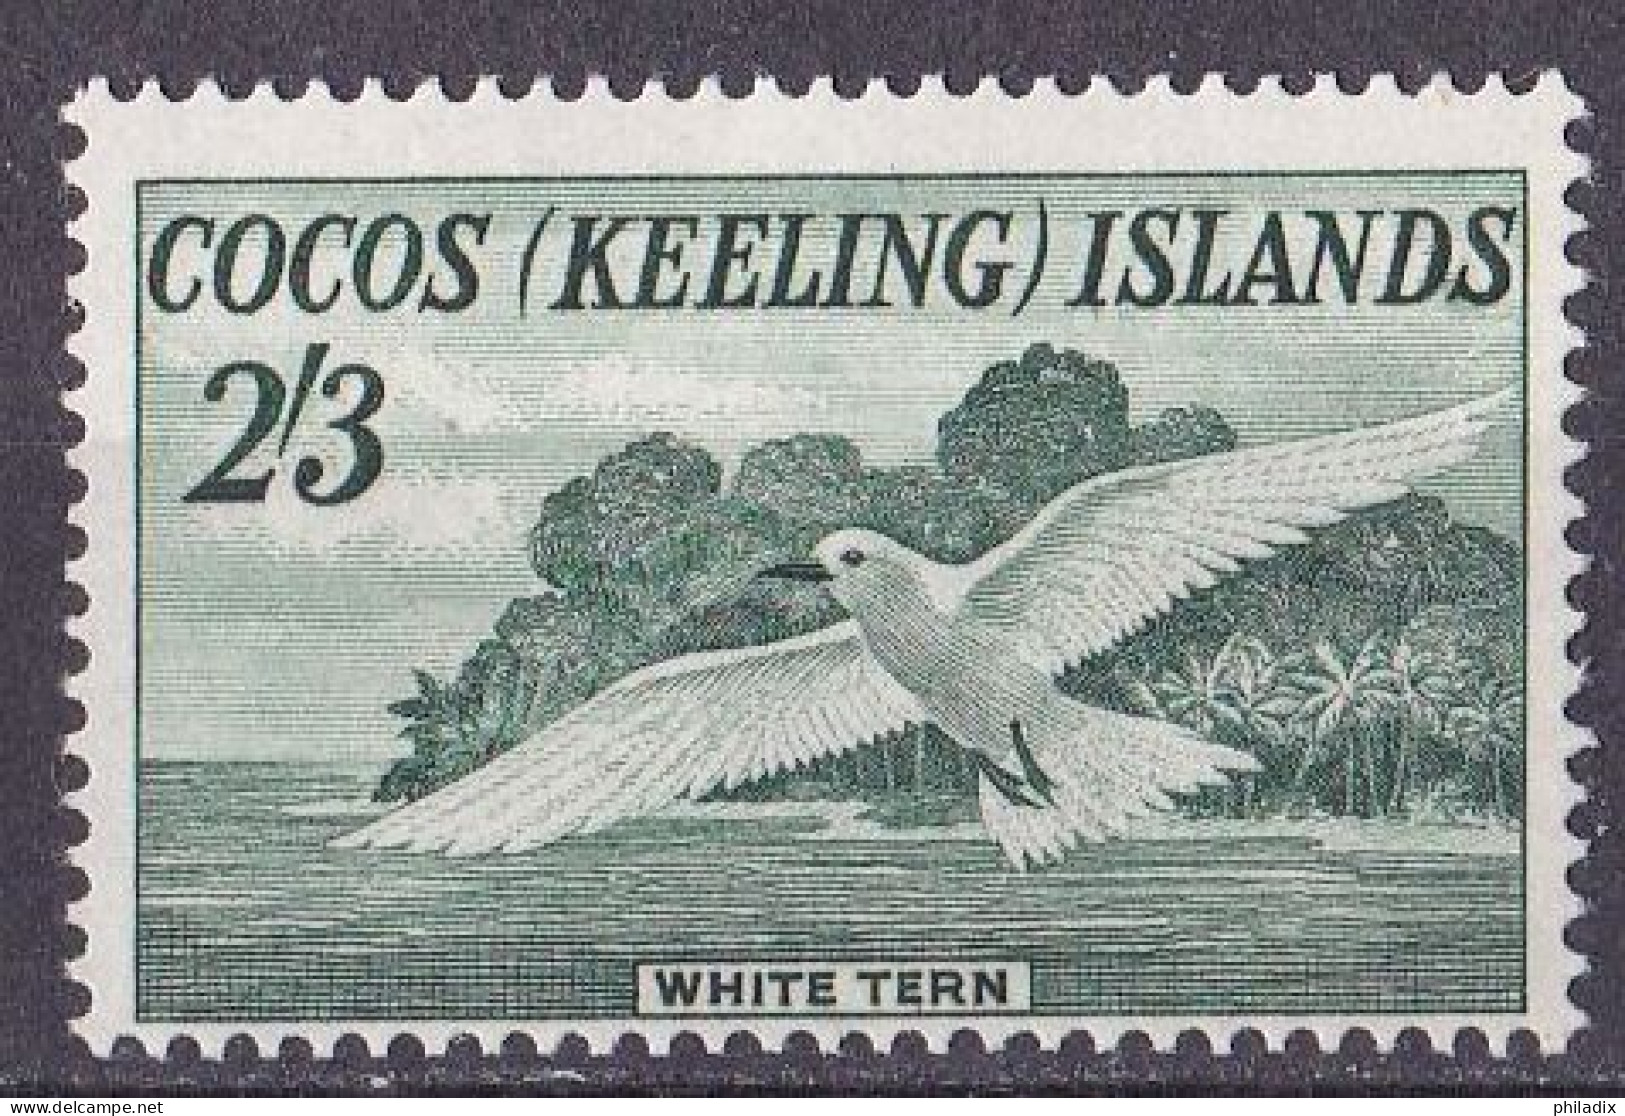 Kokosinseln (Keeling Island) Marke Von 1963 **/MNH (A5-9) - Isole Cocos (Keeling)